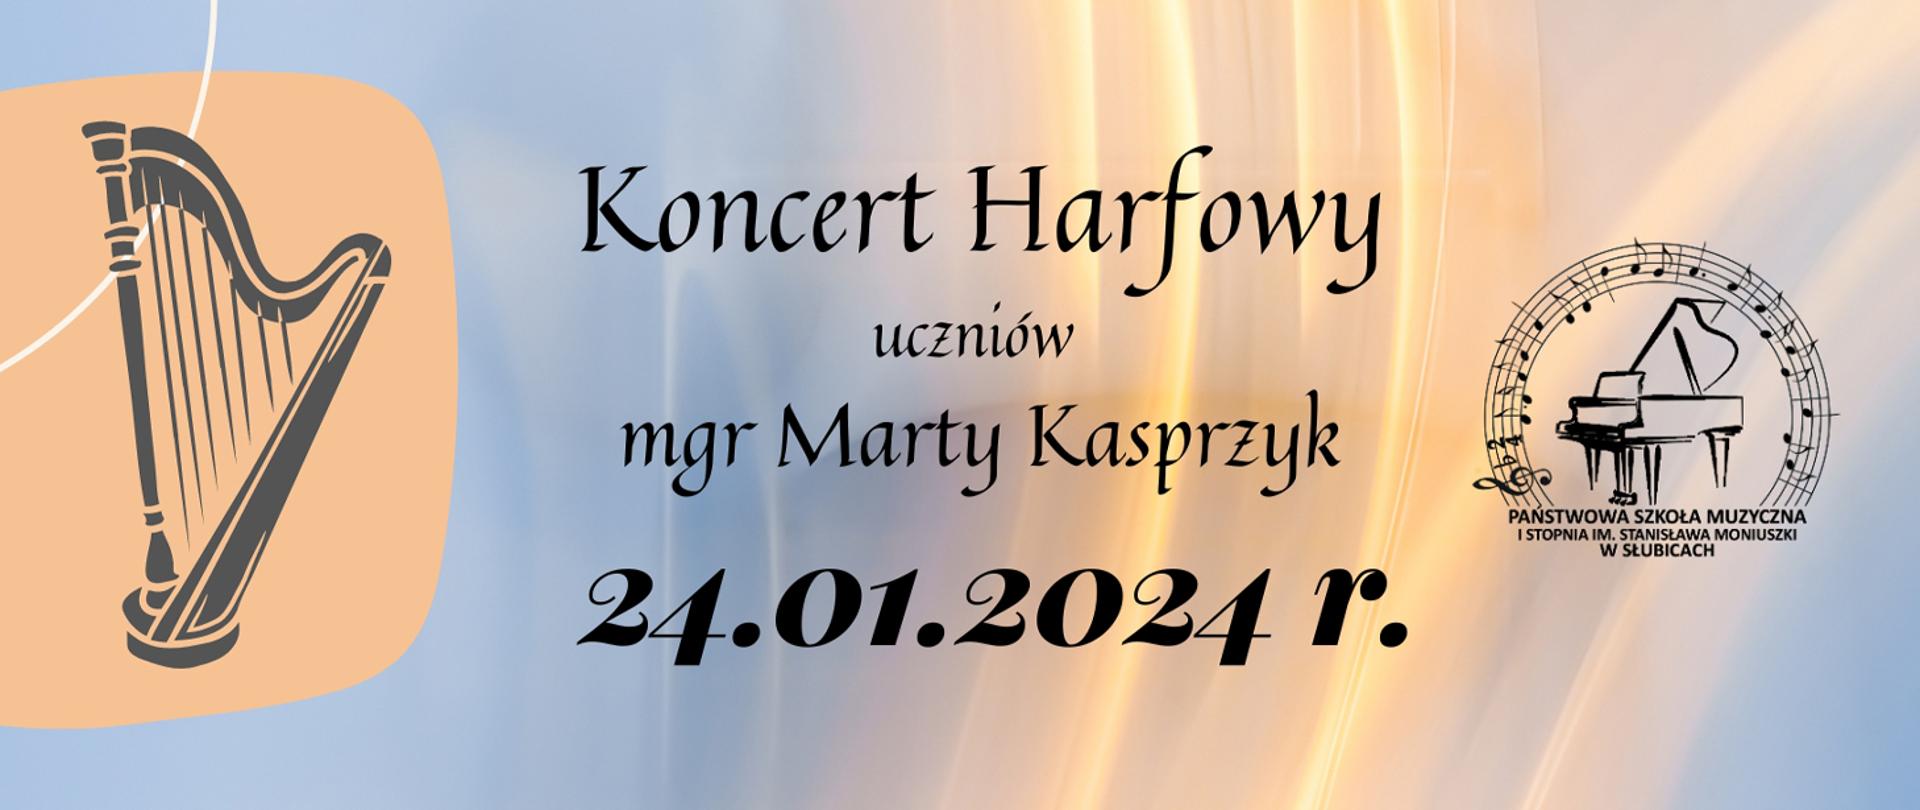 Grafika zapowiadająca koncert harfowy. Zawiera grafikę przedstawiającą harfę, logo szkoły oraz datę i nazwę koncertu.